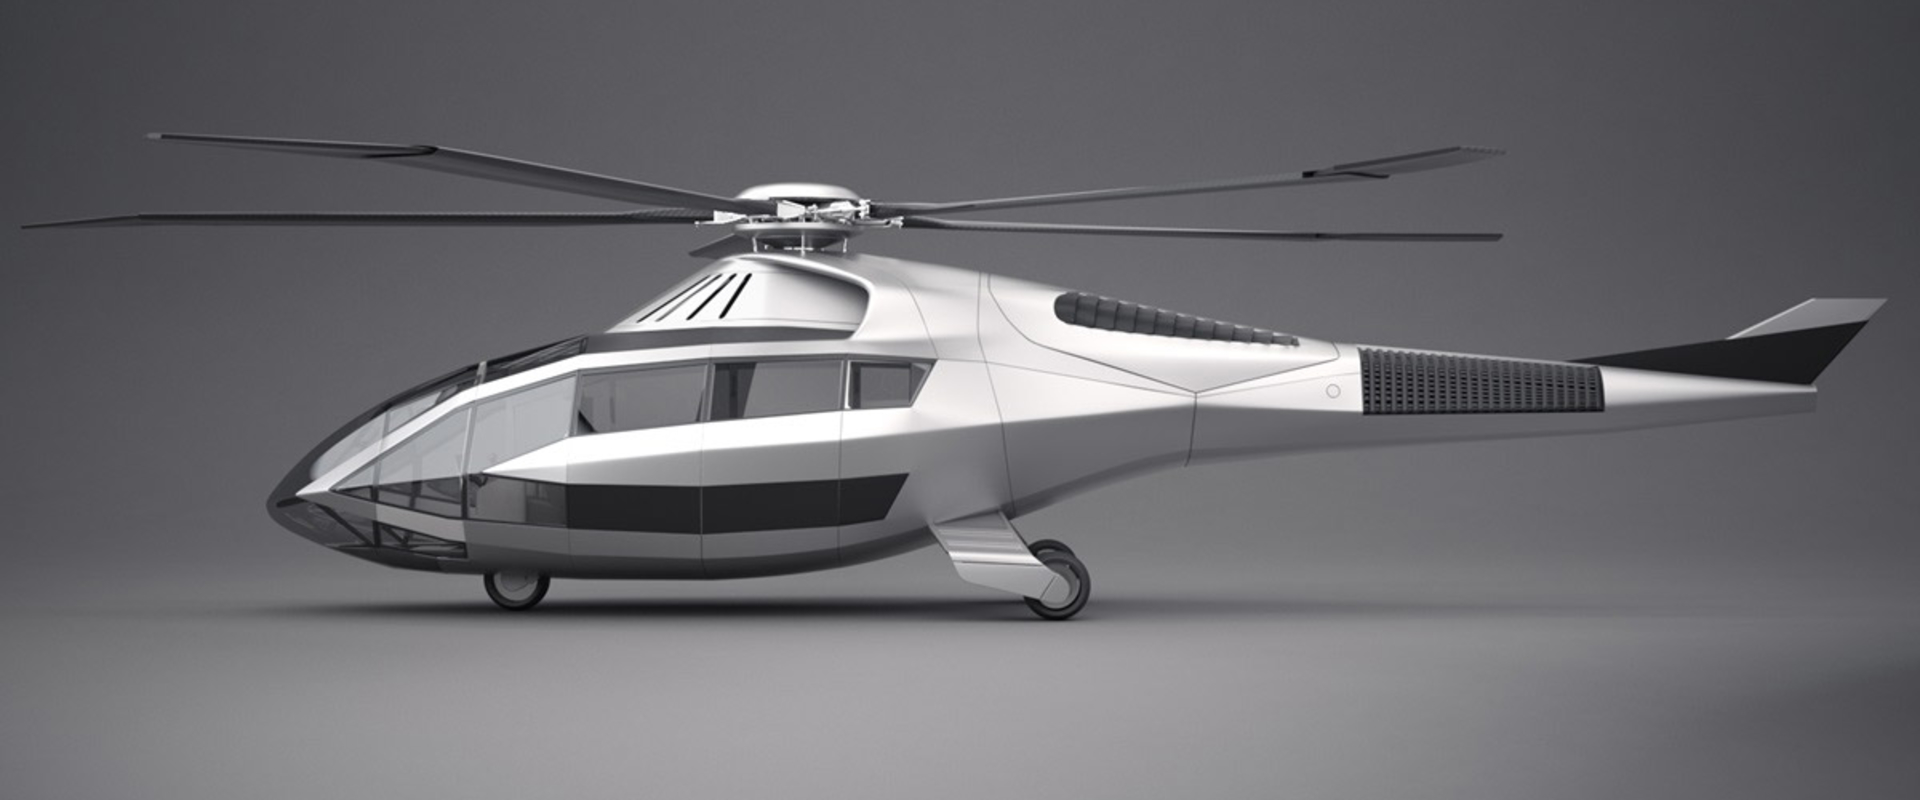 A VR segítségével tizedannyi idő alatt fejlesztettek ki egy új helikoptert